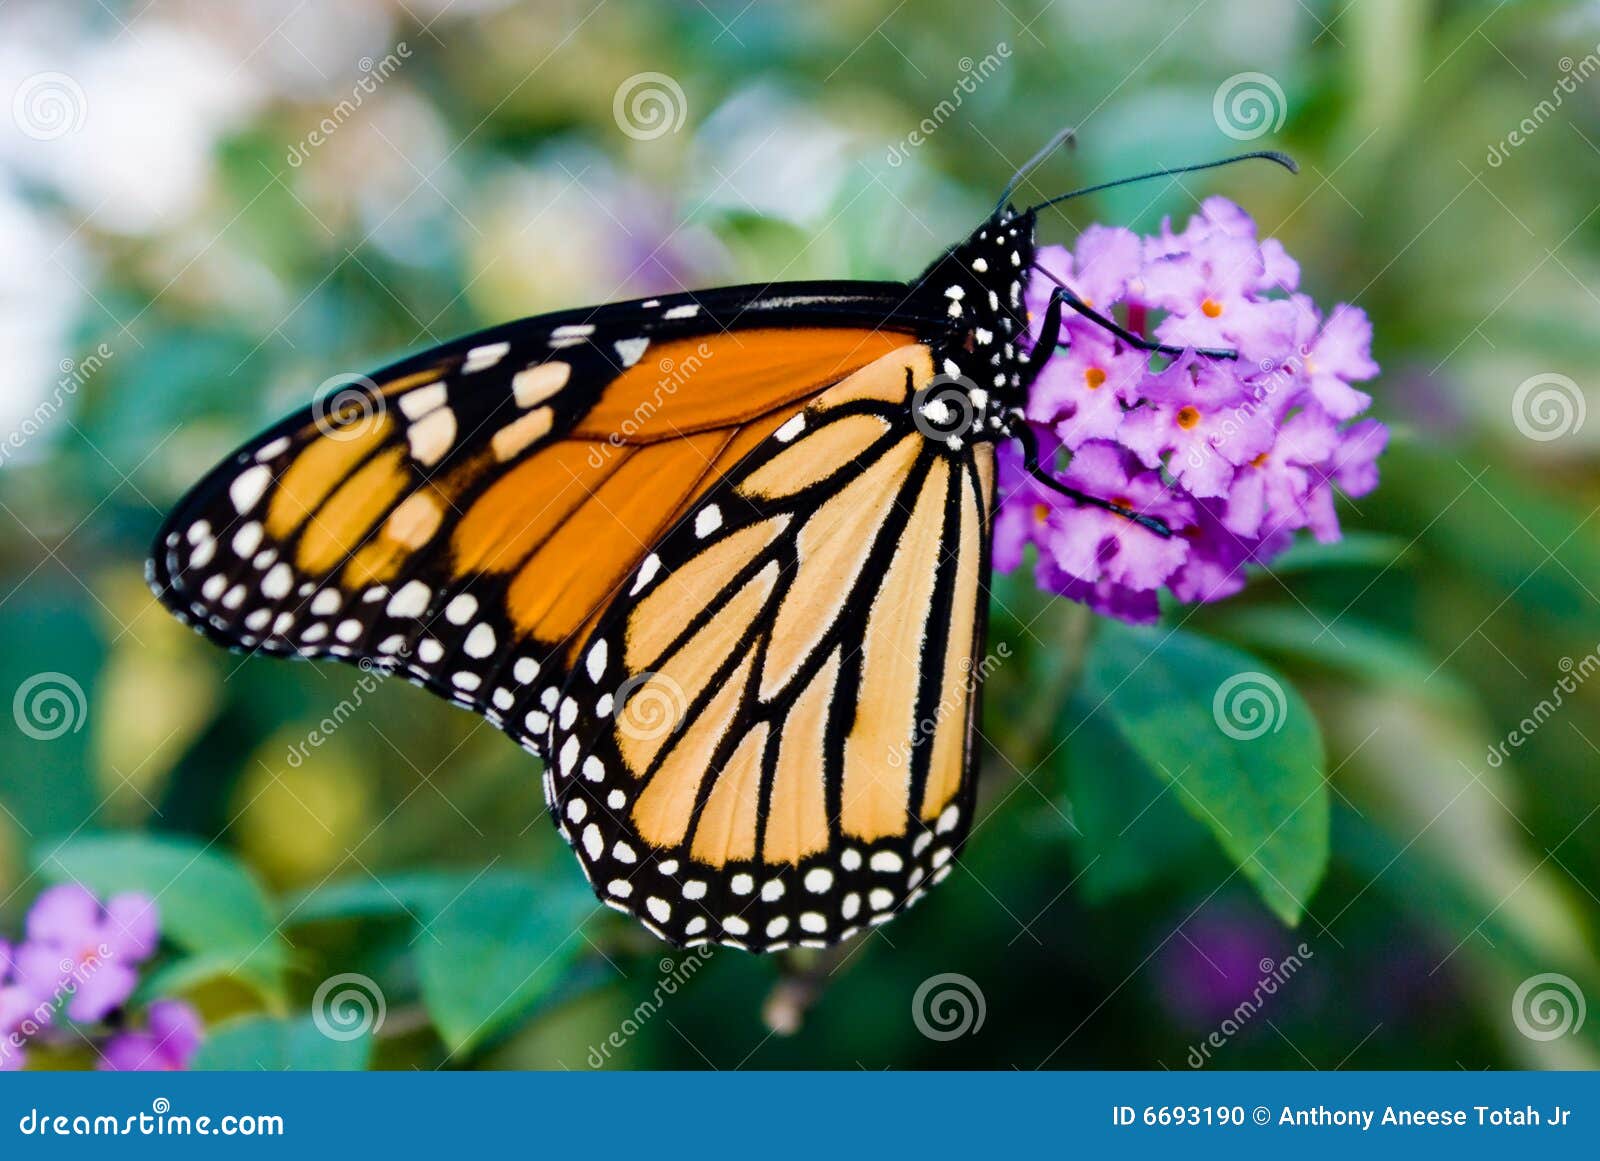 female monarch butterfly (danaus plexippus)